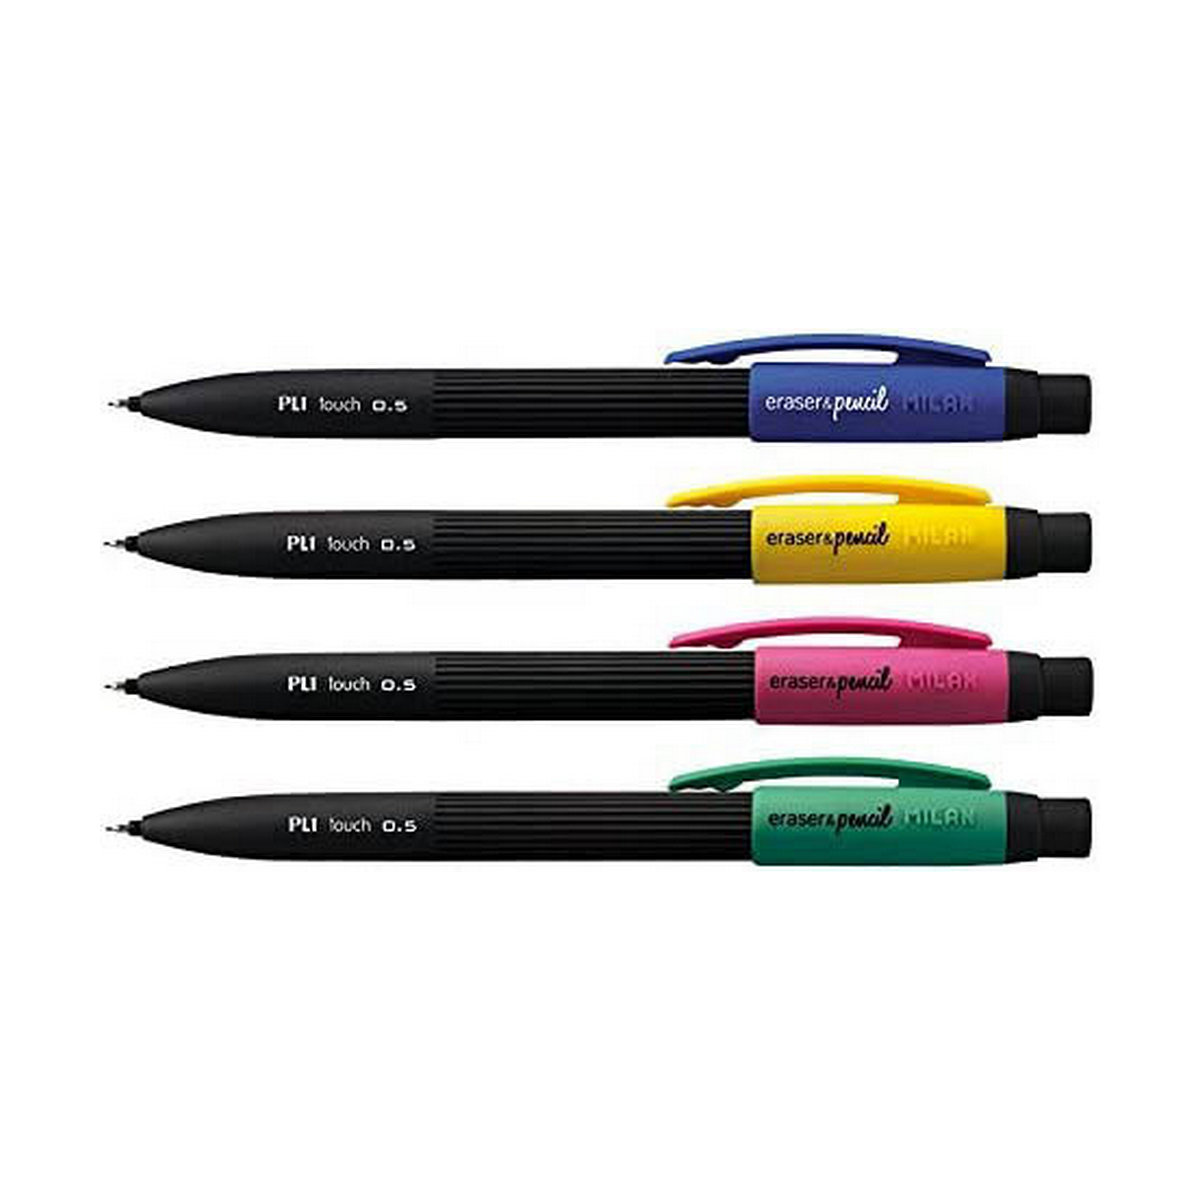 Creion mecanic Milan Eraser & pencil